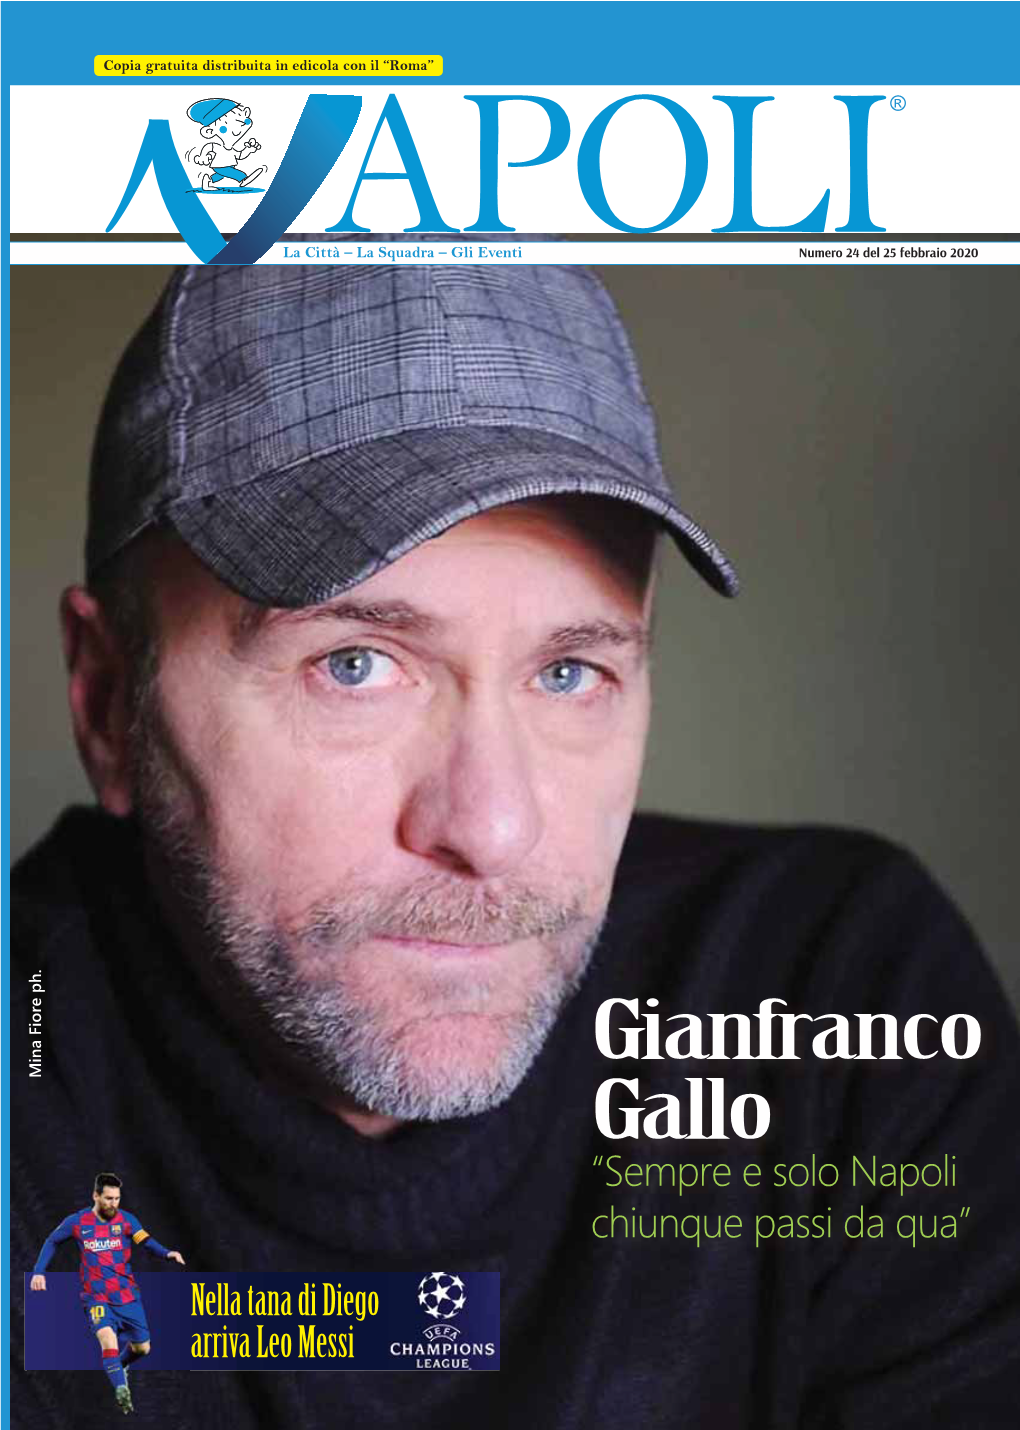 Gianfranco Gallo